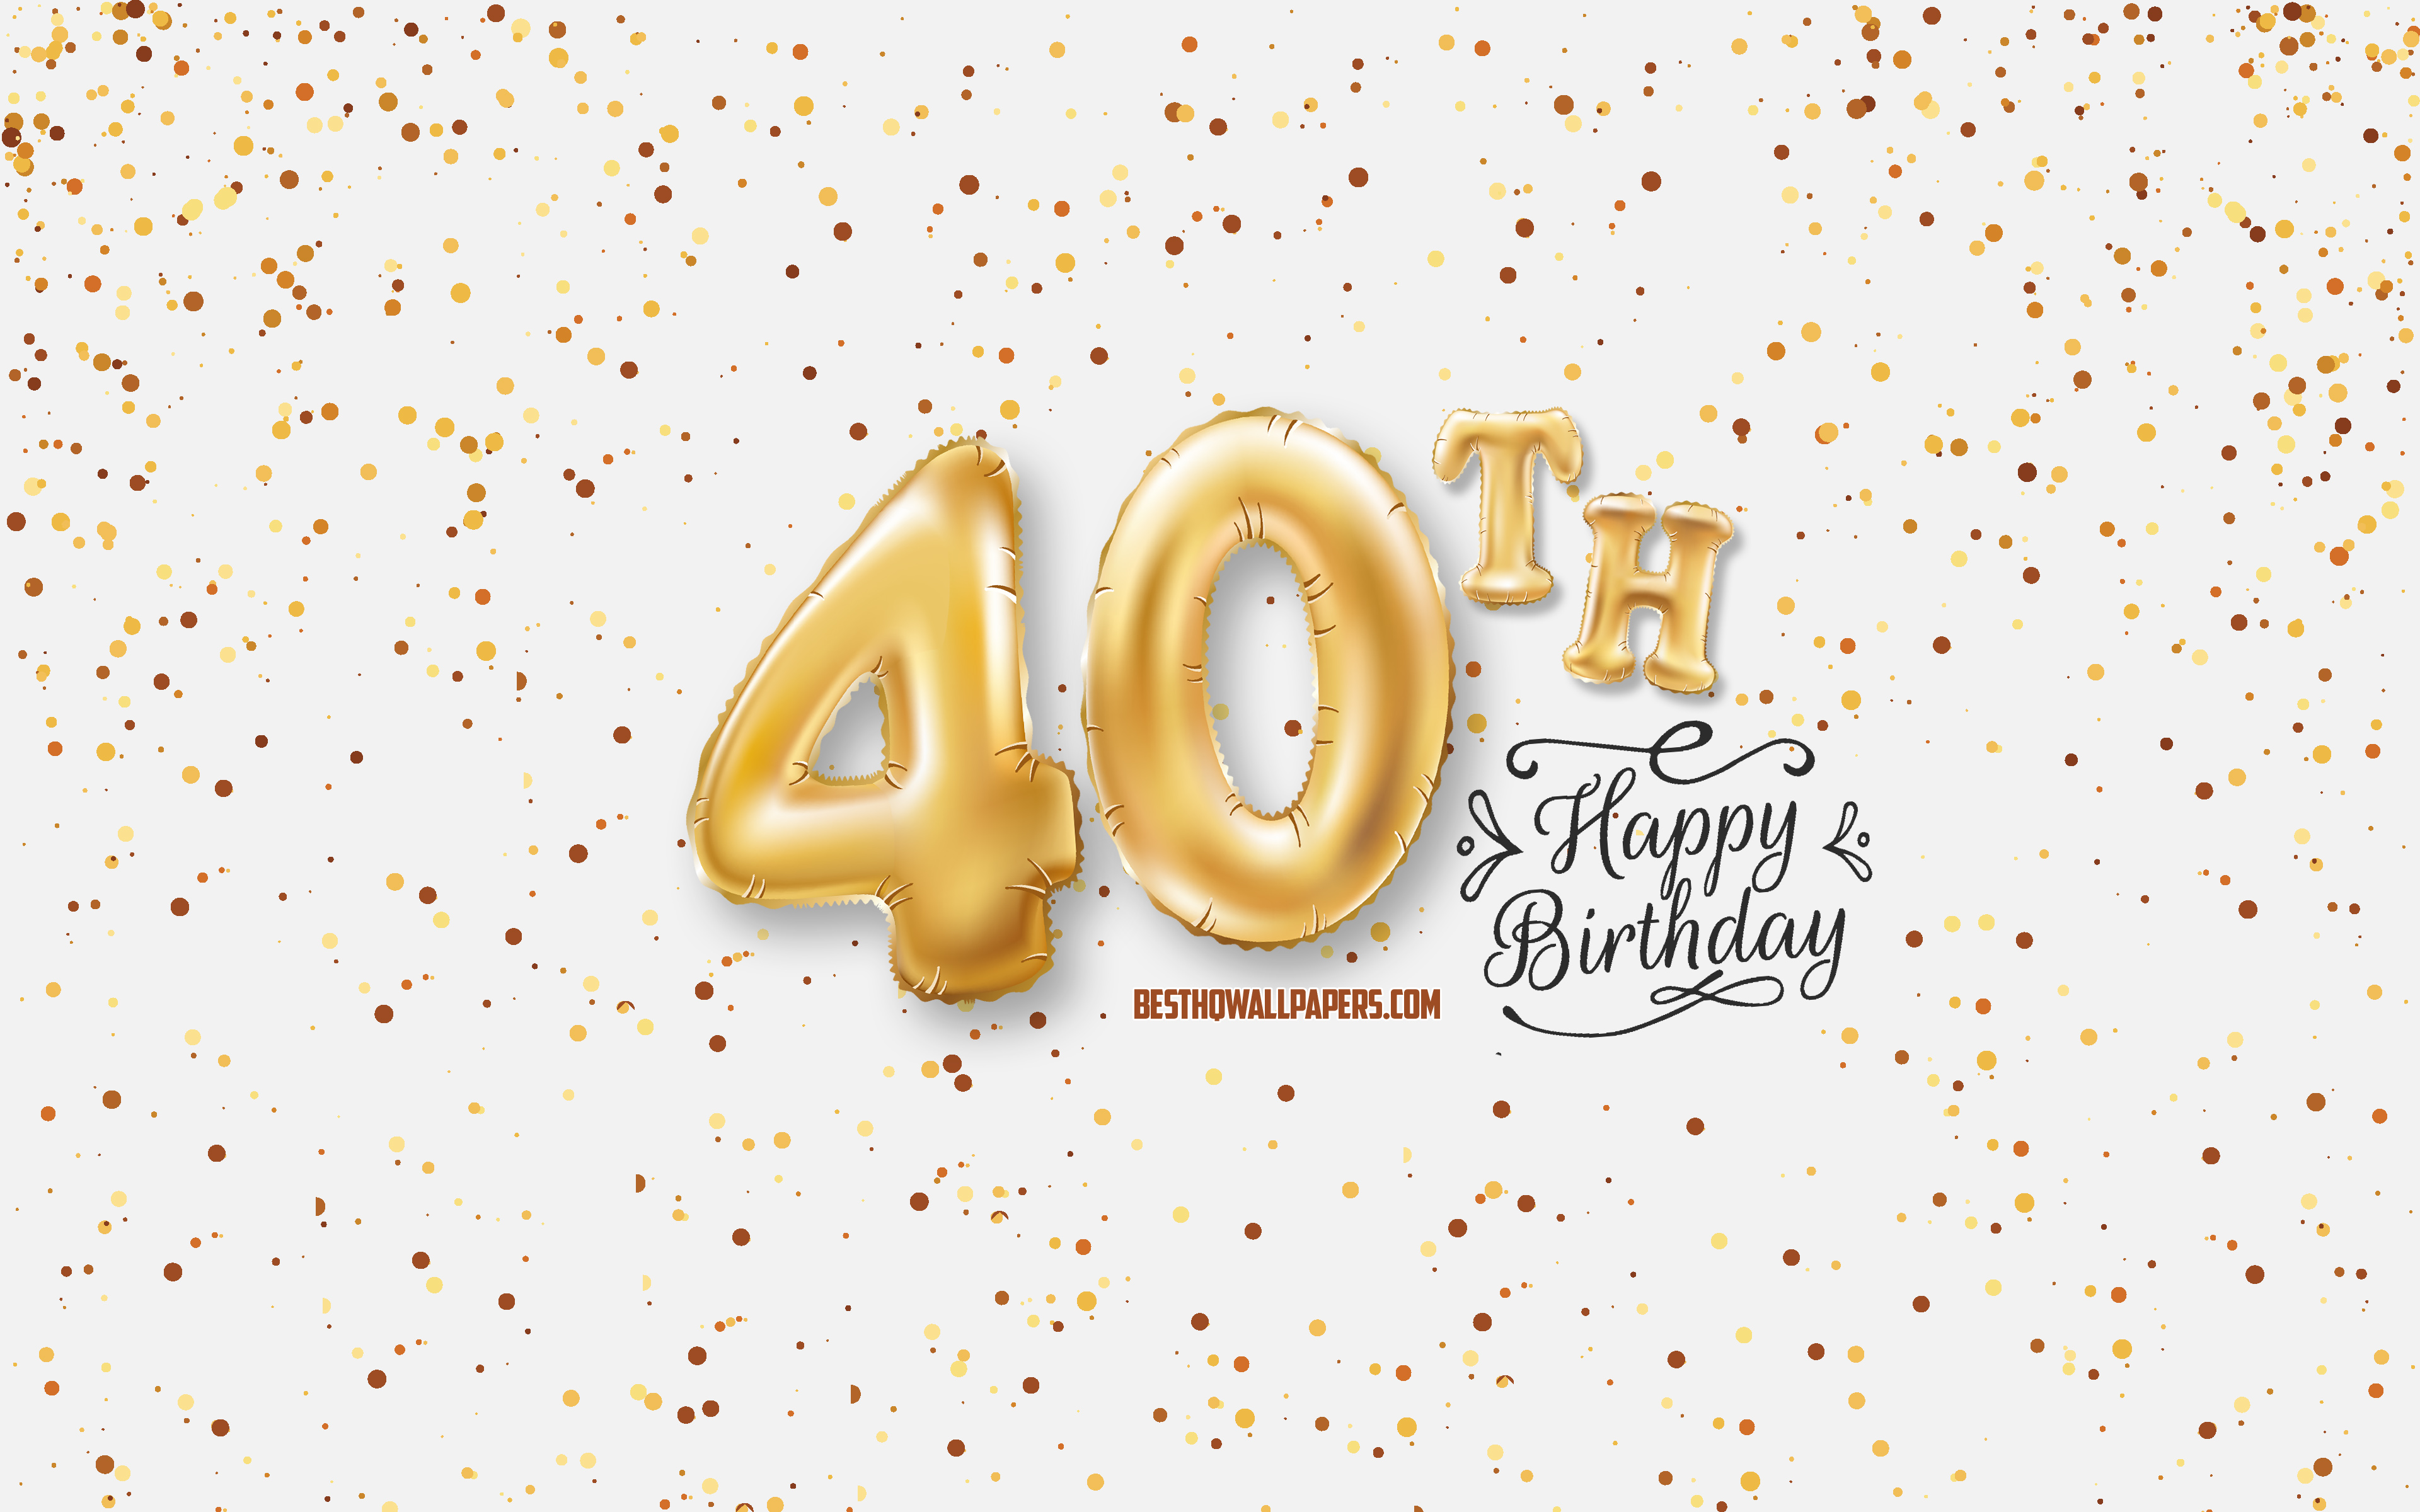 Feliz 40 cumpleaños globos tarjeta de felicitación de fondo